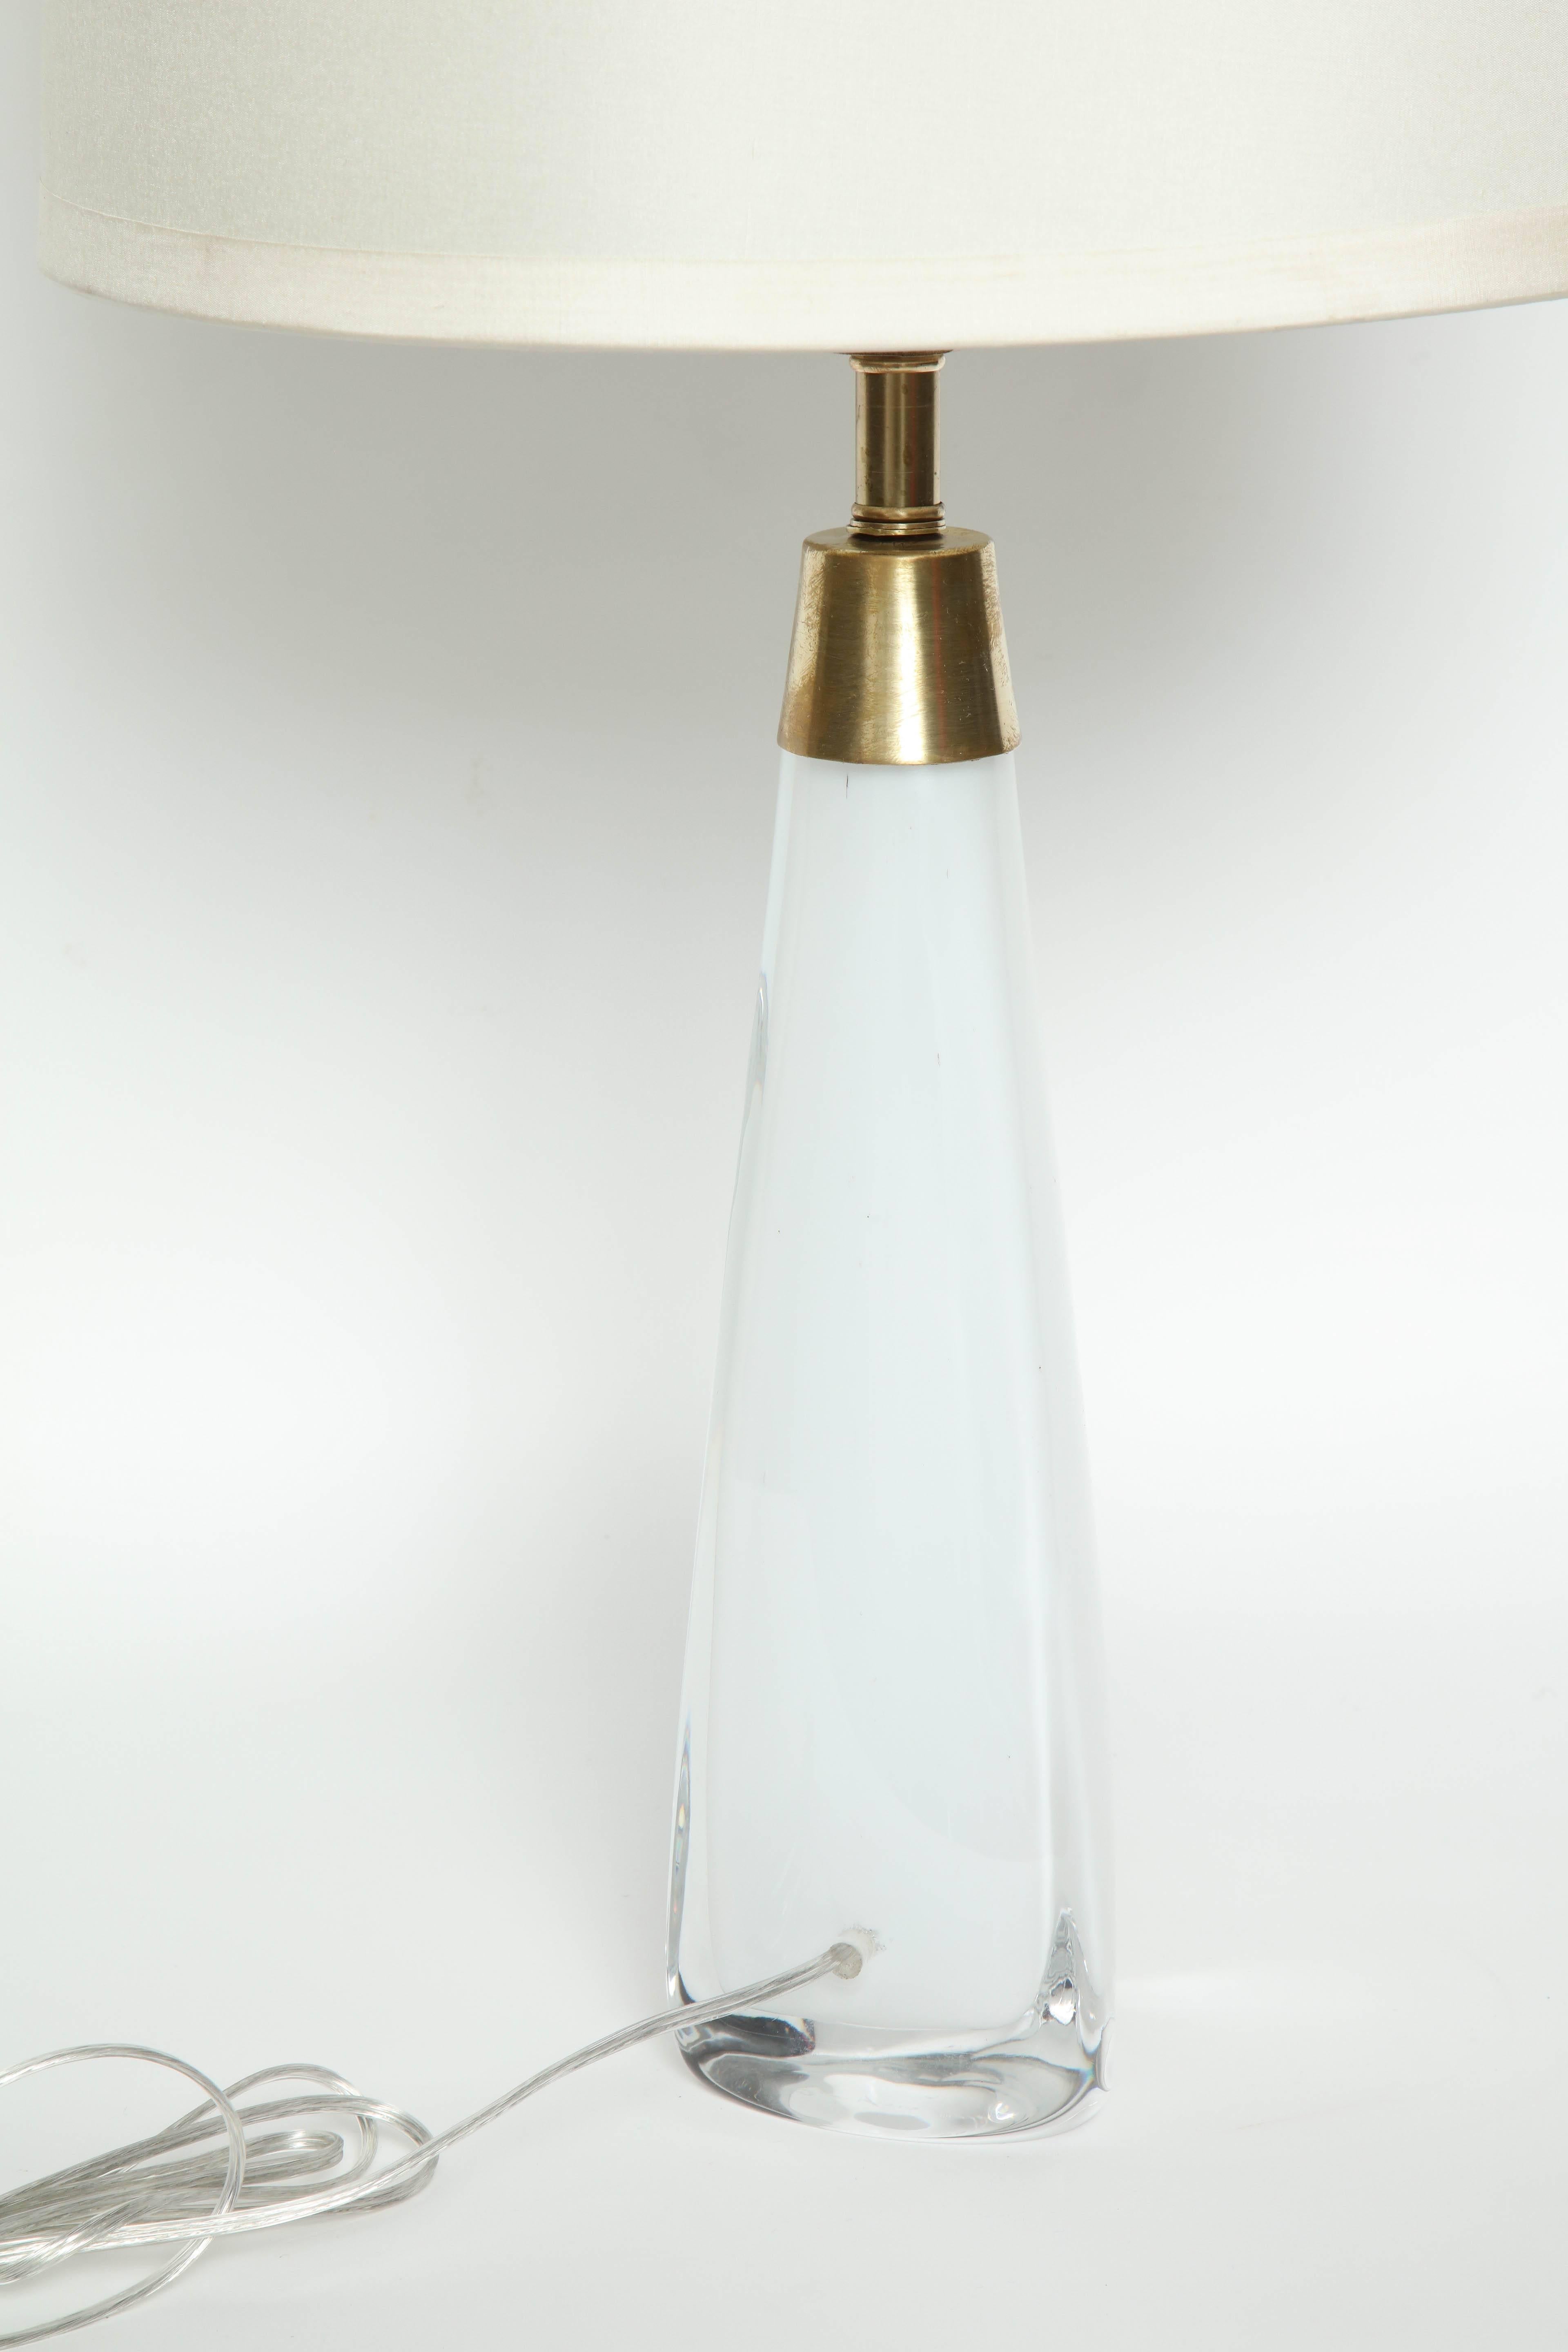 Brass Nils Landberg for Orrefors White Crystal Lamps